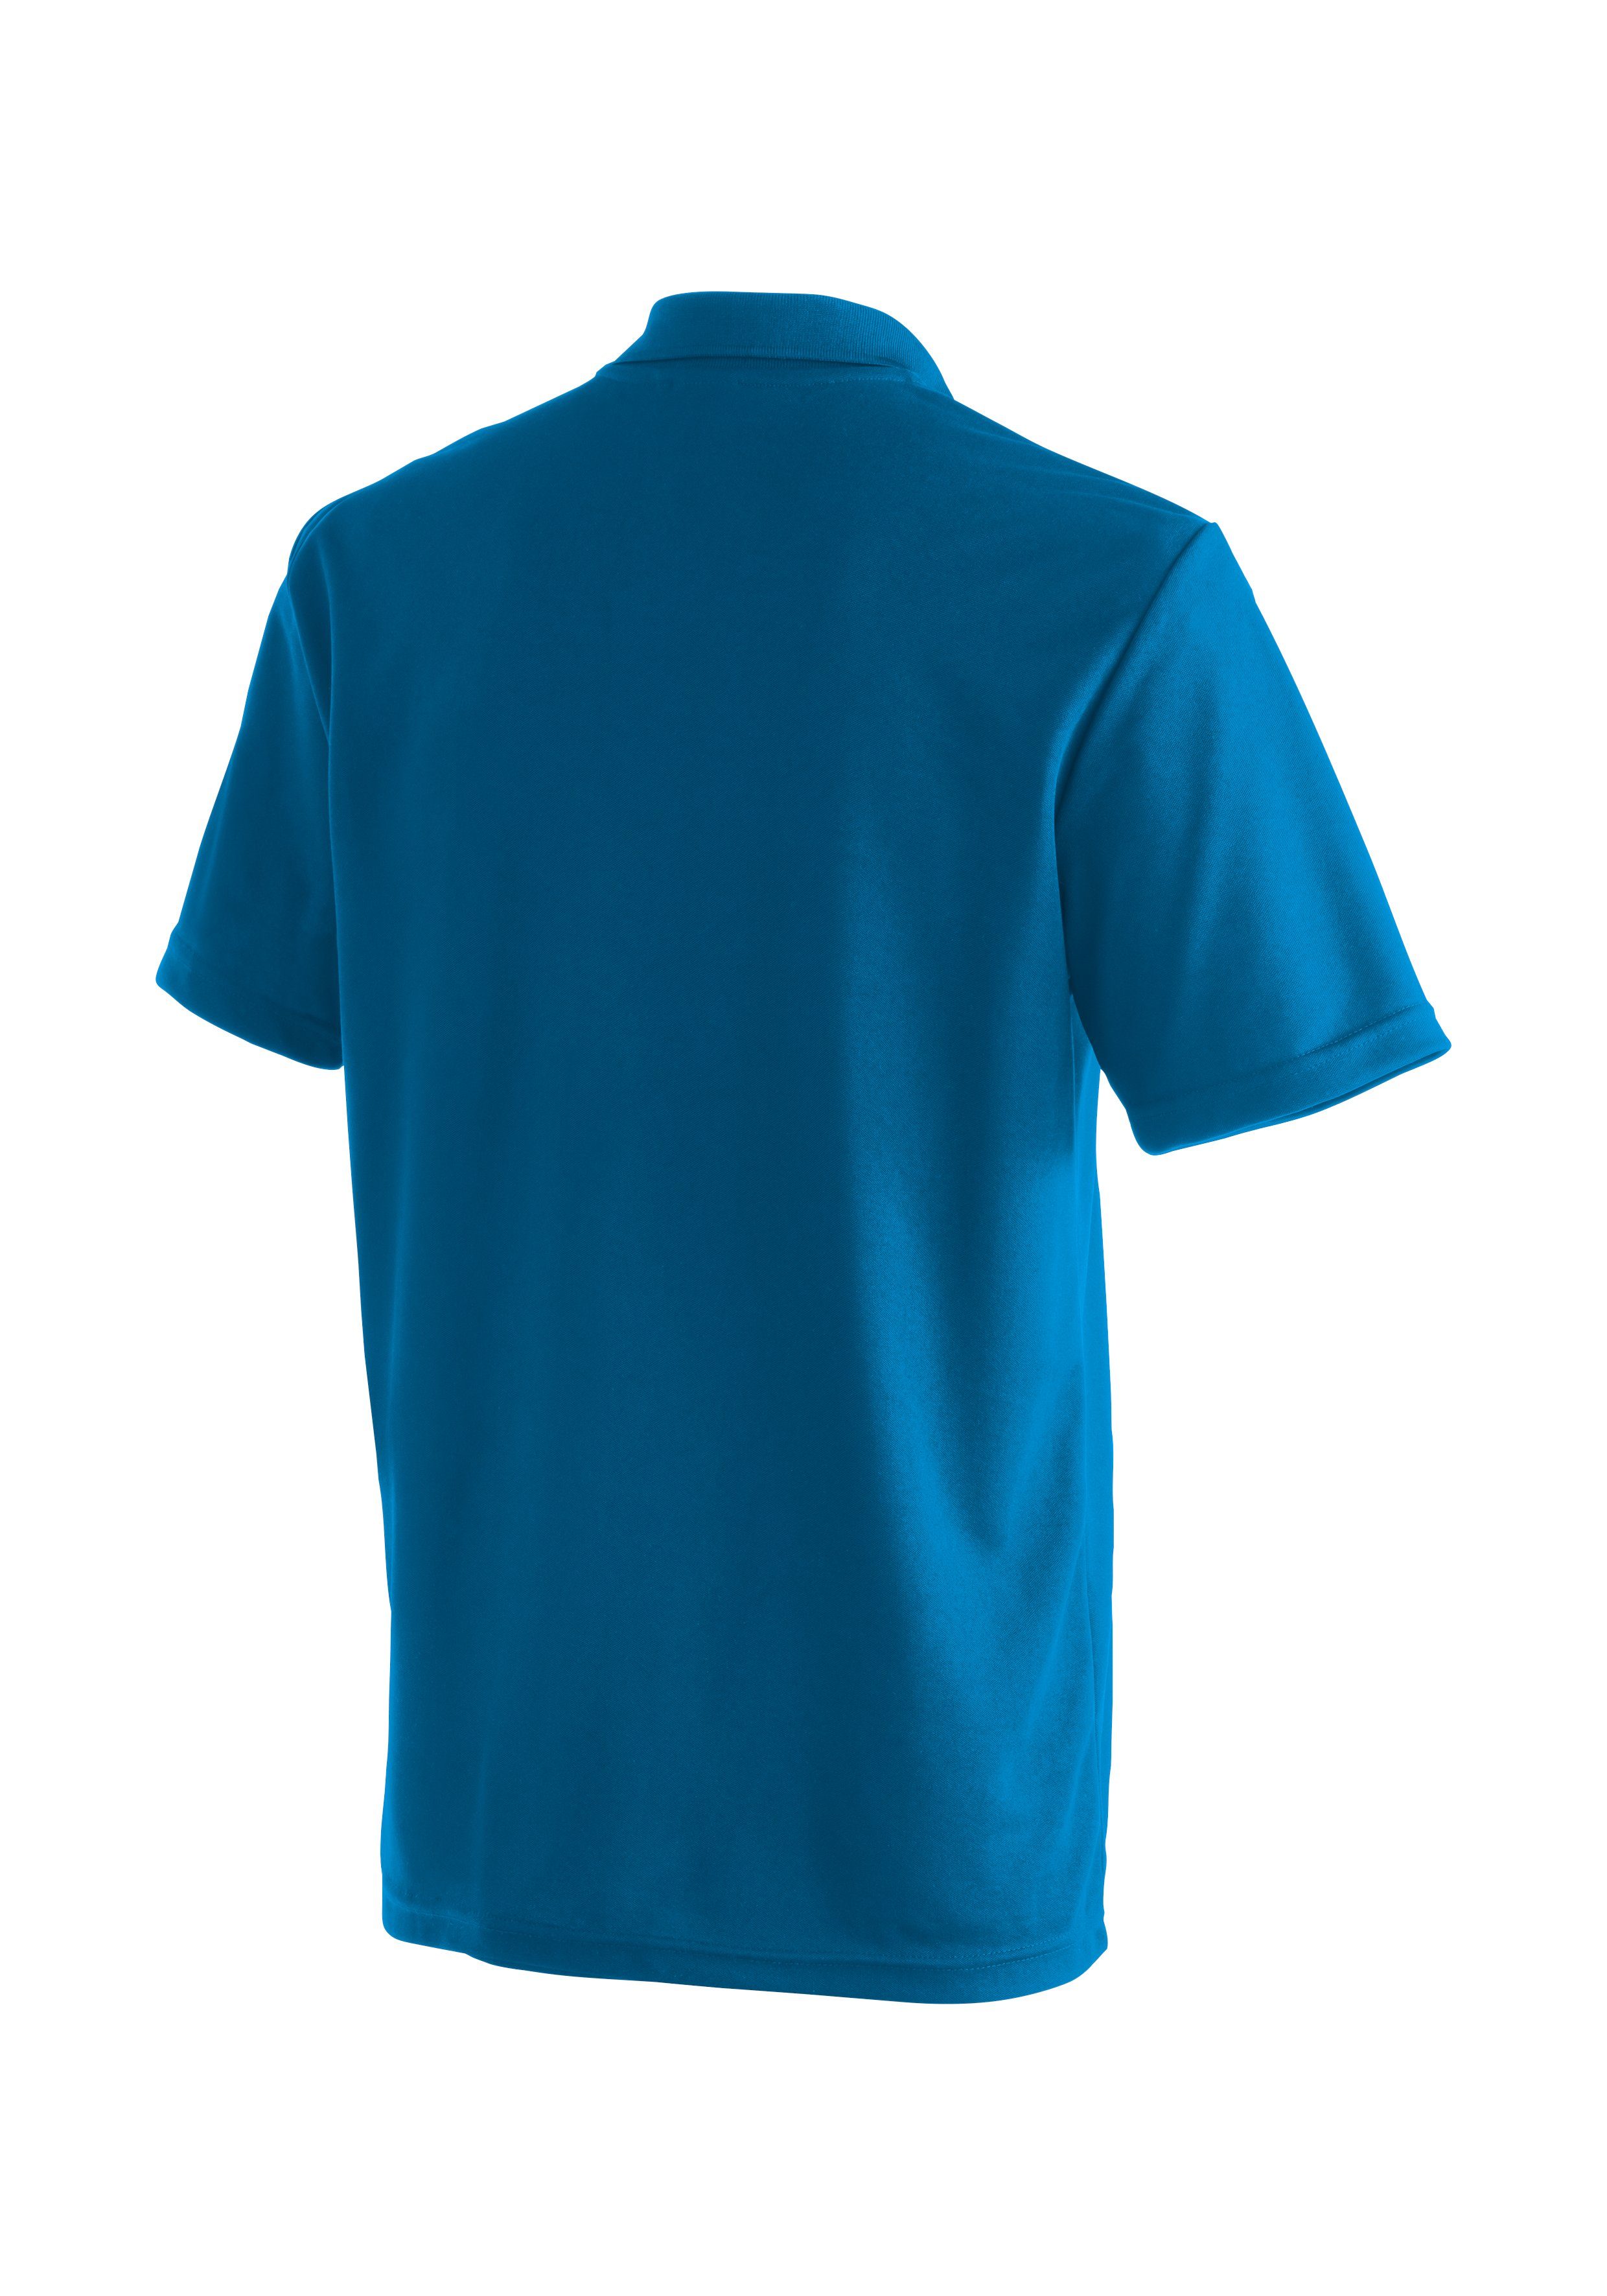 Herren Maier Wandershirt, und saphirblau Funktionsshirt Freizeit Polo-Shirt bequemes Sports Ulrich für Wandern